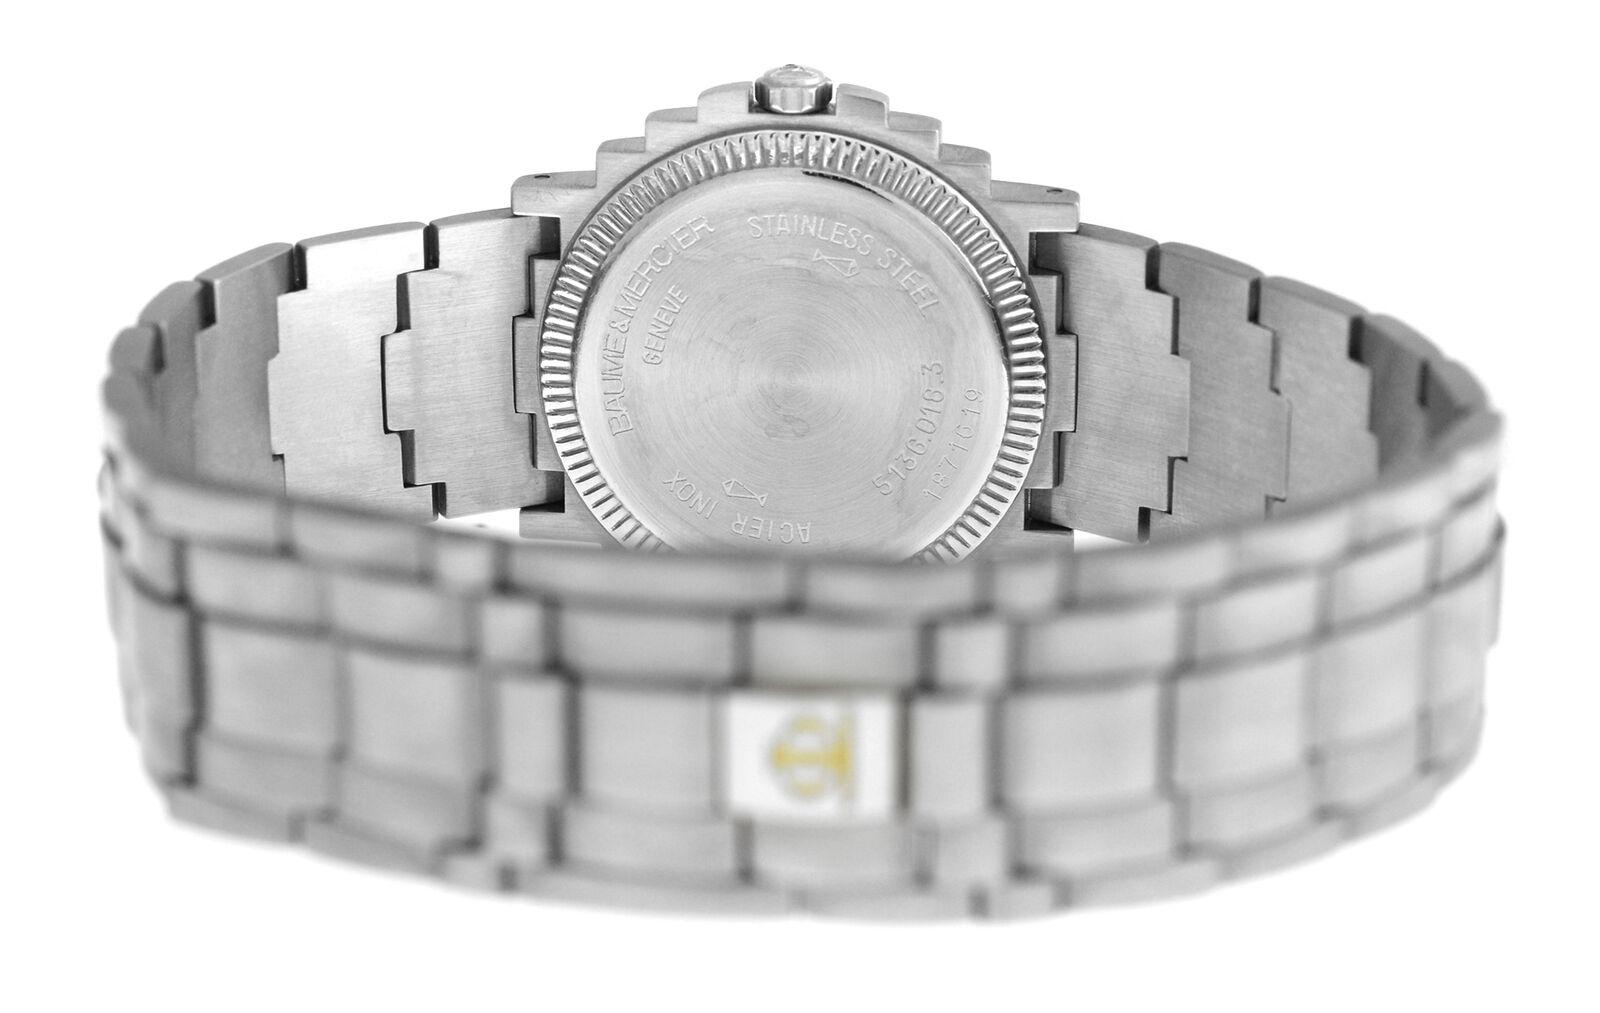 Unisex Baume & Mercier Shogun 5136.018.3 Stainless Quartz Watch 3